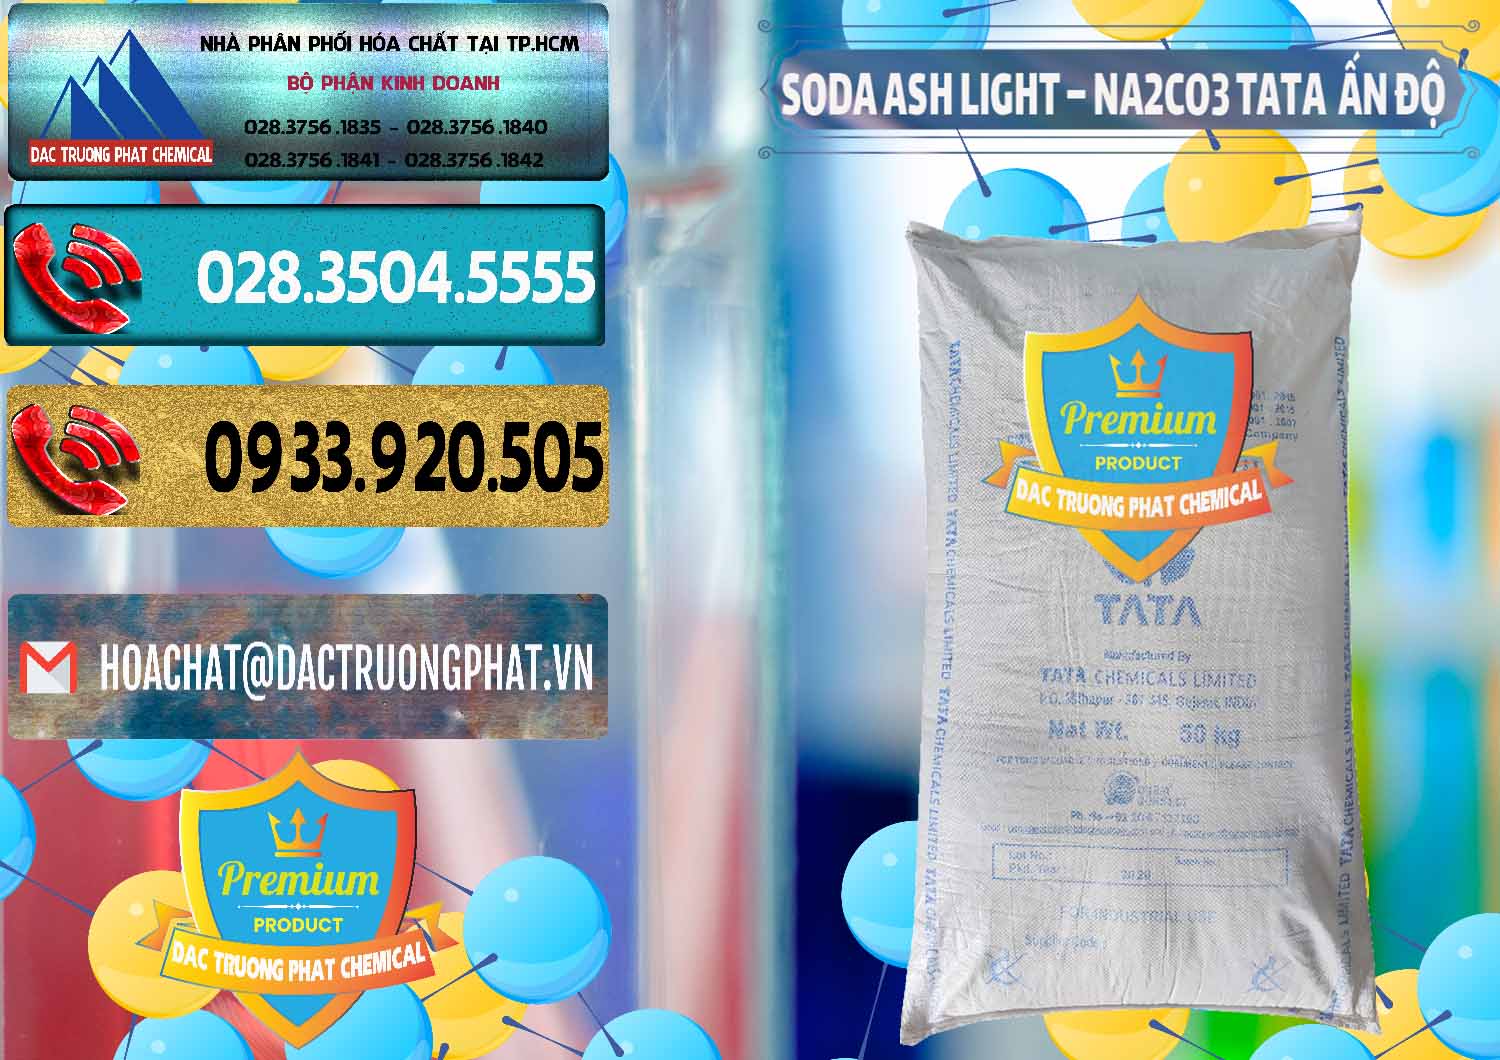 Nơi chuyên phân phối - bán Soda Ash Light - NA2CO3 TATA Ấn Độ India - 0132 - Chuyên nhập khẩu _ phân phối hóa chất tại TP.HCM - hoachatdetnhuom.com